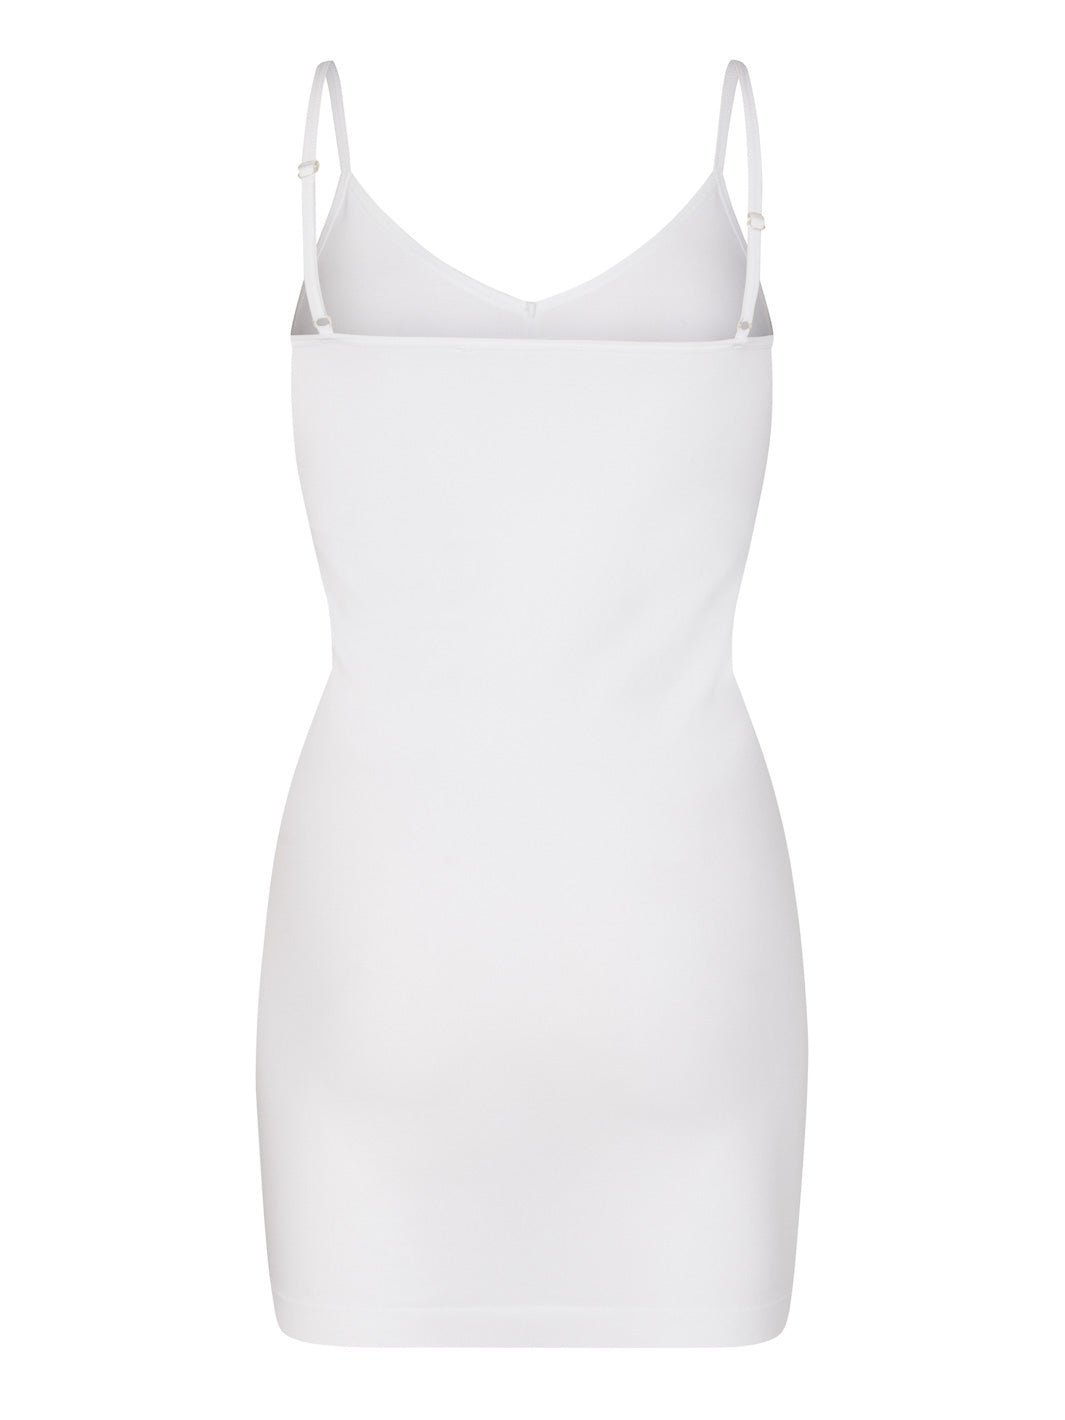 Liberté Ninna slip dress white - Online-Mode